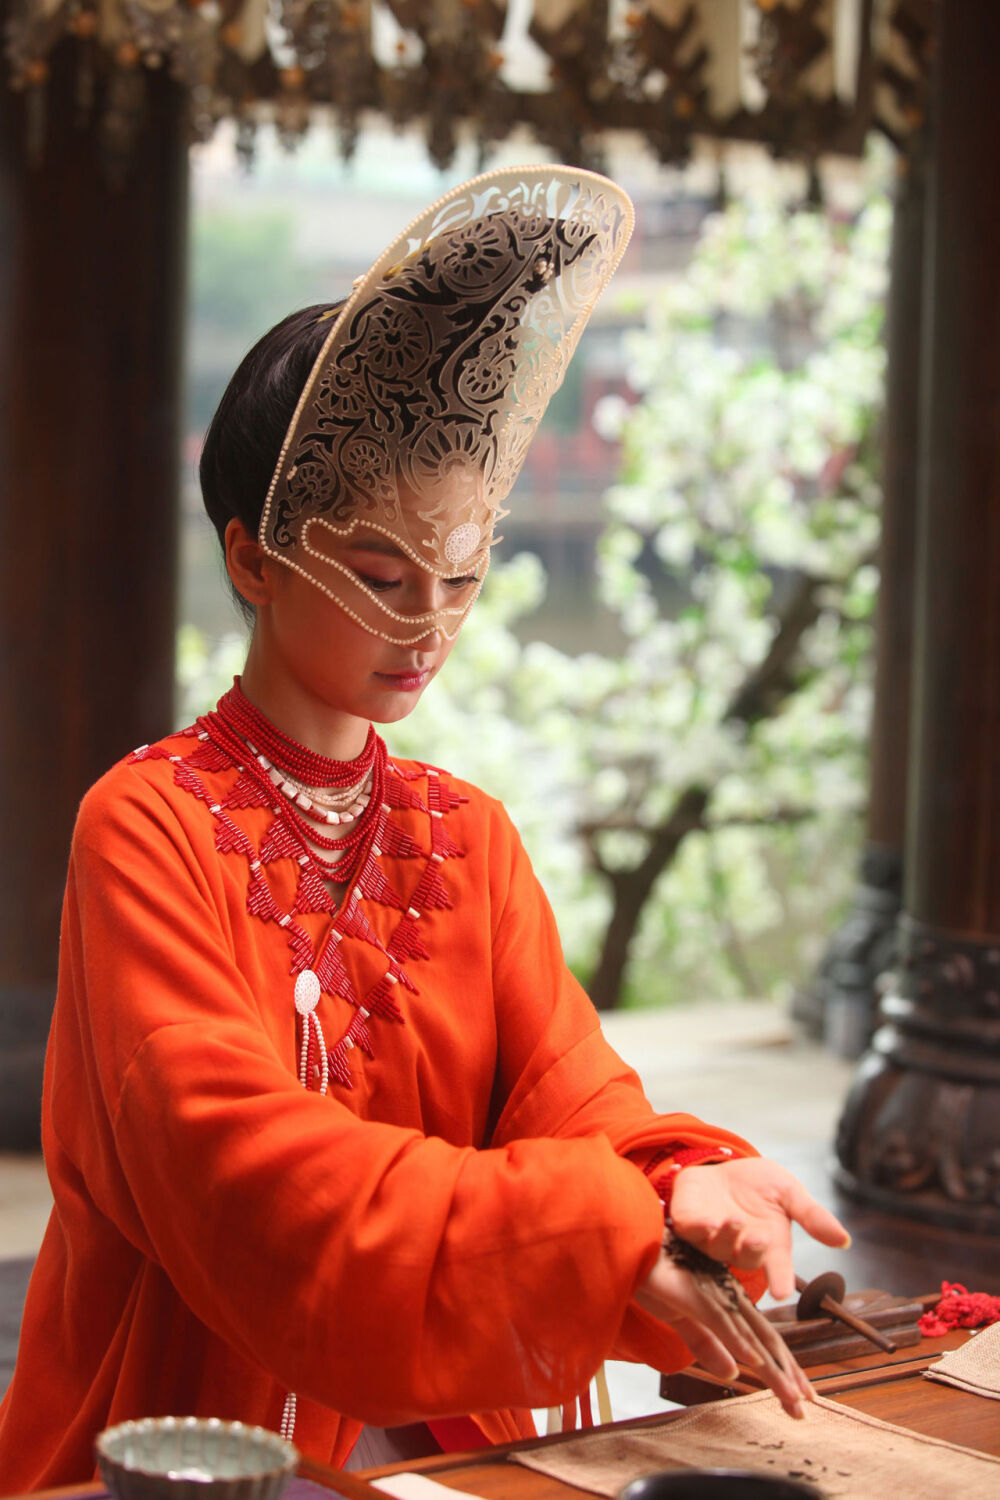 杨颖（Angelababy），1989年2月28日出生于上海市，华语影视女演员、时尚模特。2003年，Angelababy以模特身份在香港出道。2007年，她开始将工作重心转向大银幕。2011年在爱情片《夏日乐悠悠》中首次担任女主角。2012年凭借言情片《第一次》获得第13届华语电影传媒大奖最受瞩目女演员奖。2014年凭借真人秀《奔跑吧兄弟》赢得广泛关注；同年，她还因出演古装片《狄仁杰之神都龙王》获得第21届北京大学生电影节最受欢迎女演员奖。2015年，其主演的冒险片《鬼吹灯之寻龙诀》票房突破16亿人民币，而她也凭借该片获得第33届大众电影百花奖最佳女配角奖。2017年其主演的古装剧《孤芳不自赏》取得全国同时段电视剧收视冠军。创业时代。